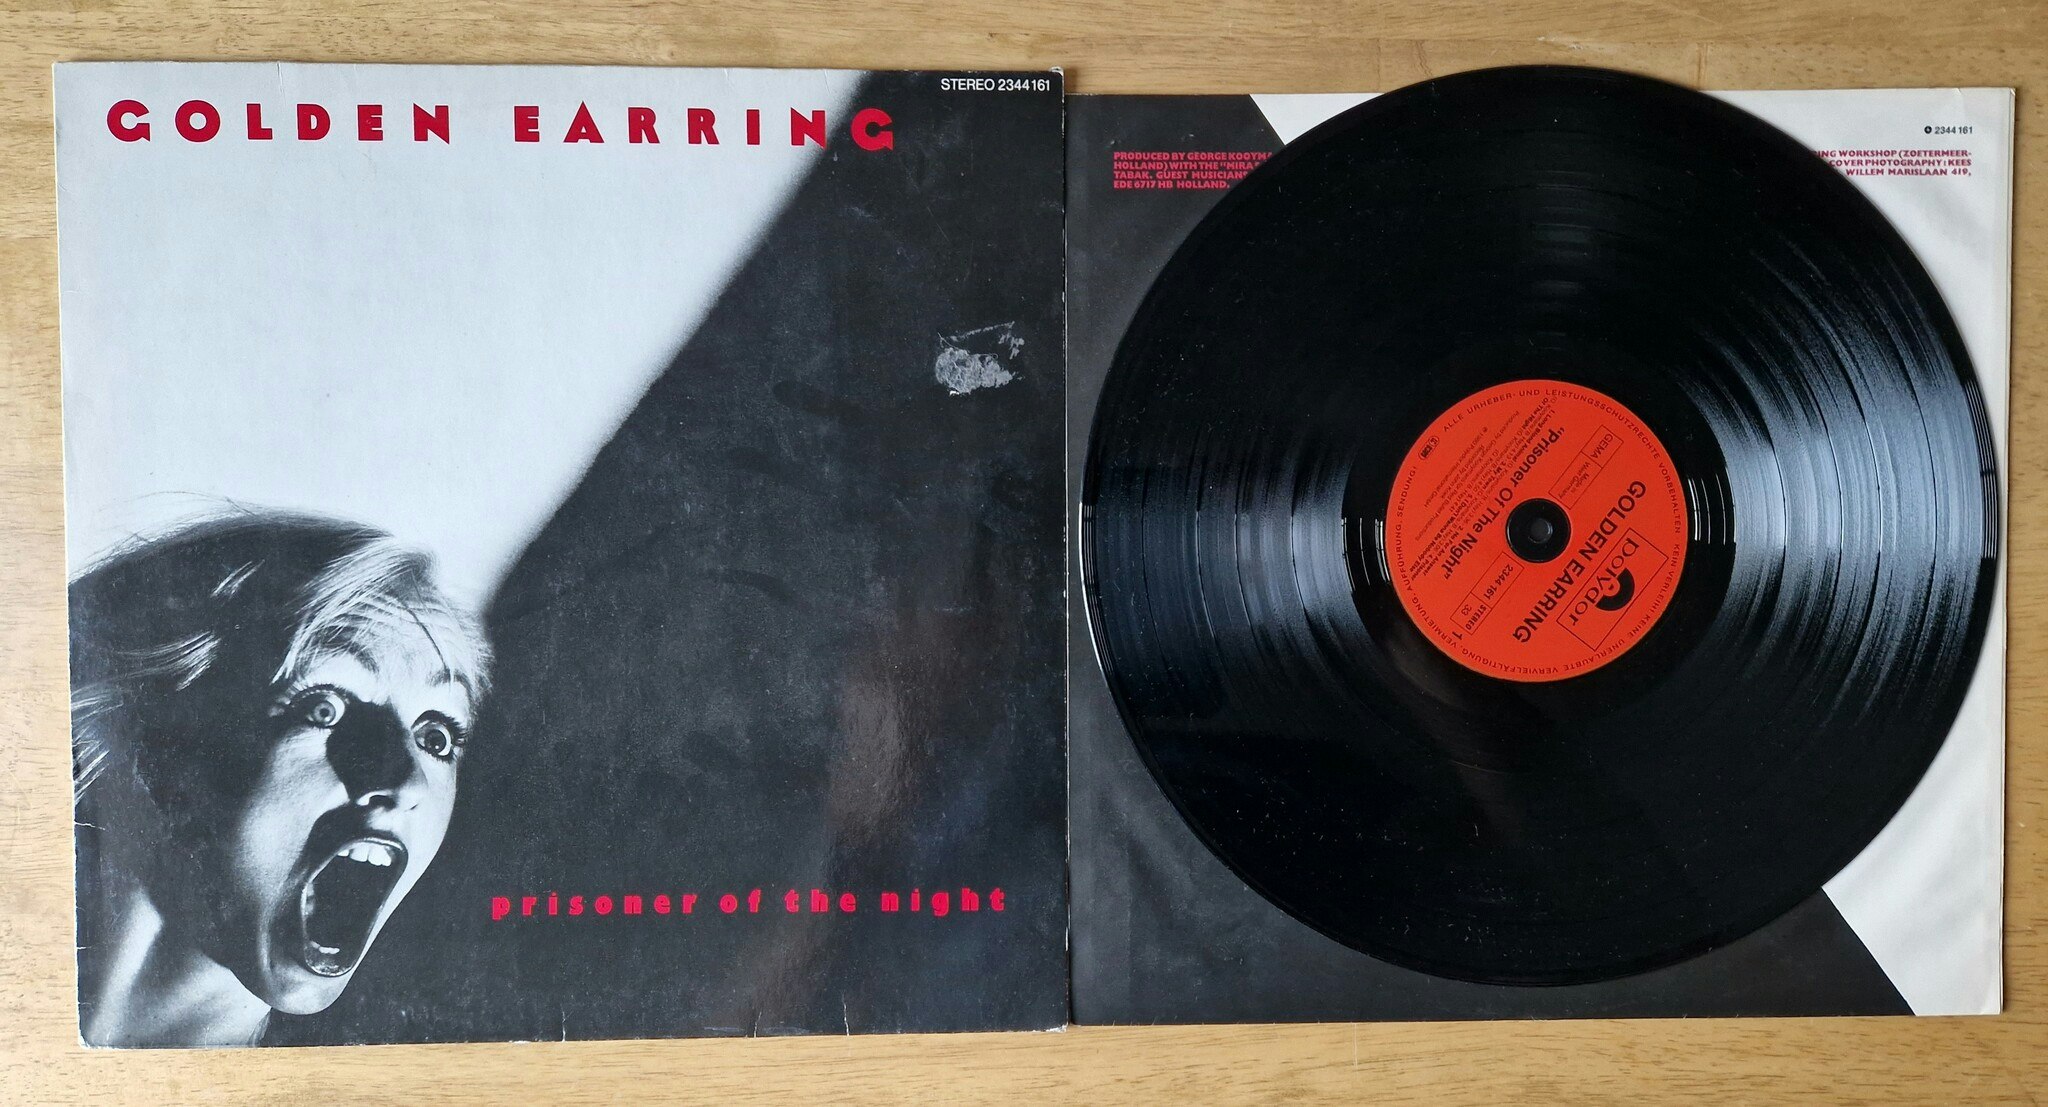 Golden Earring, Prisoner of the night. Vinyl LP